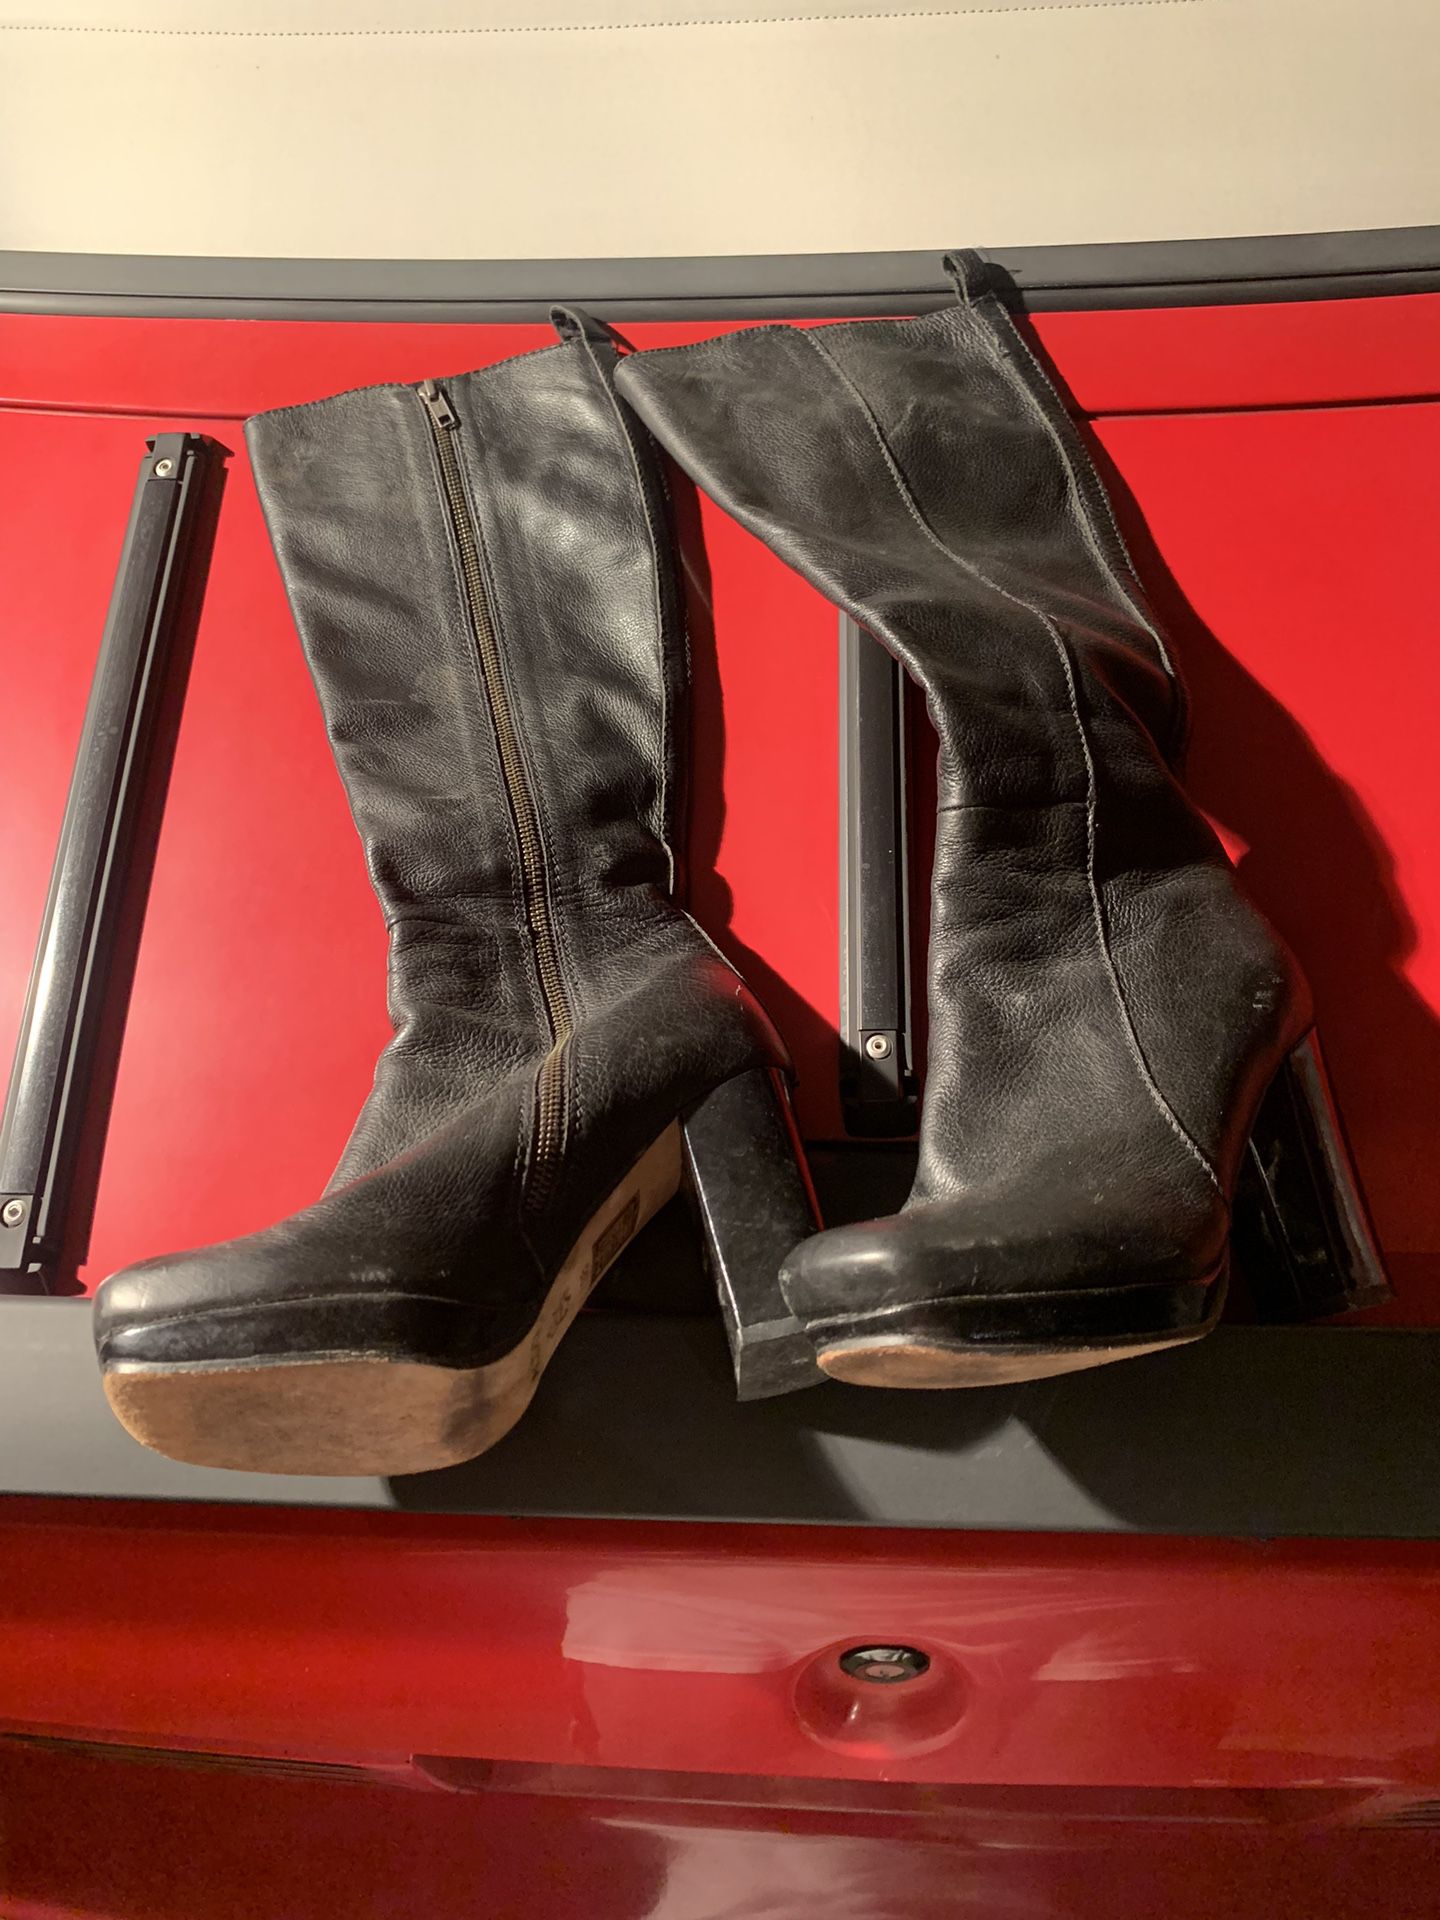 Aldo Women’s Leather Boots Size 38 EU/7.5-8 US